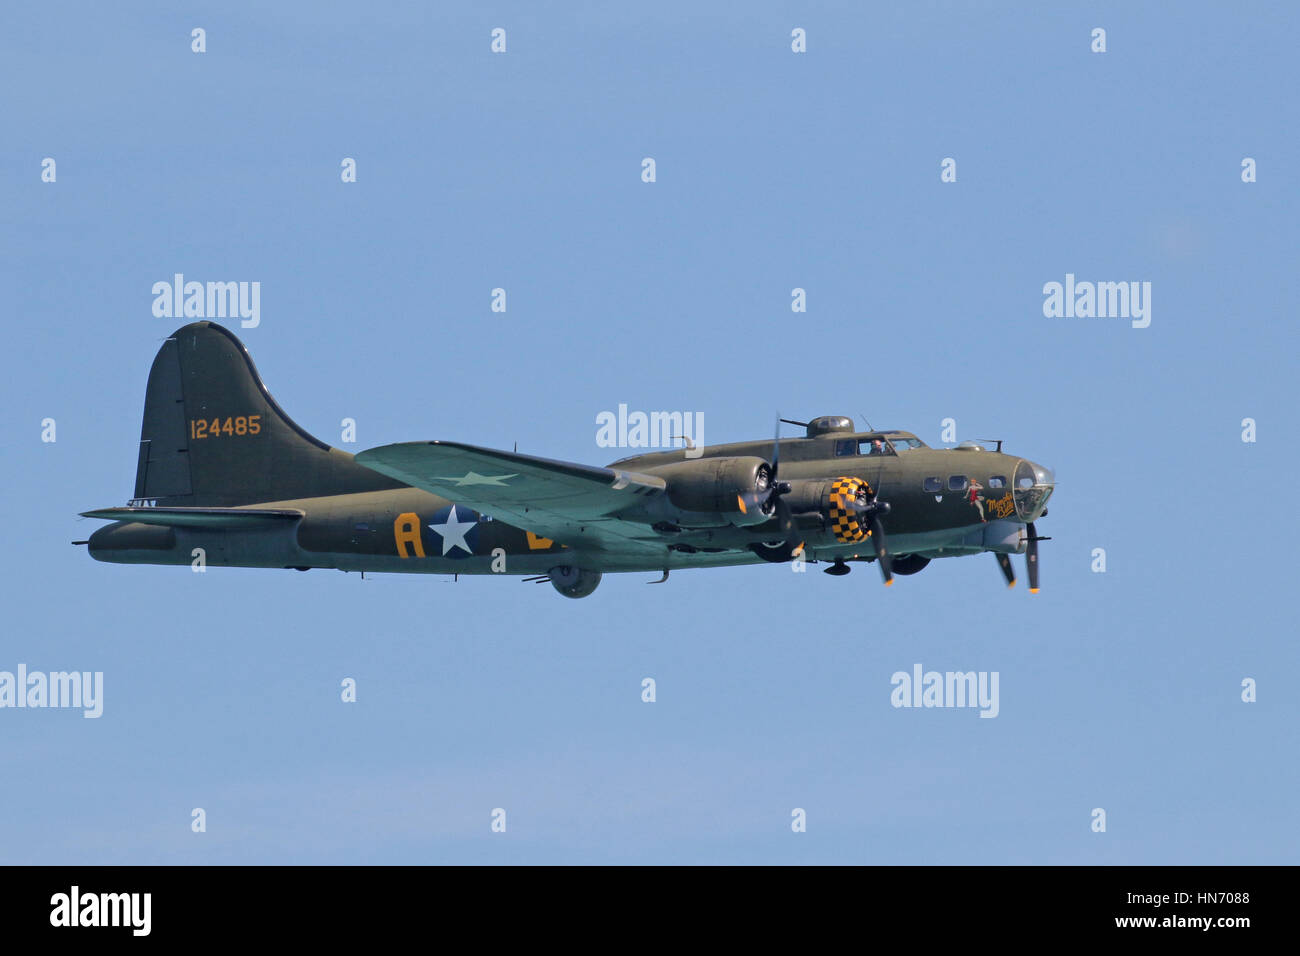 B17 bomber aircraft flypast Stock Photo